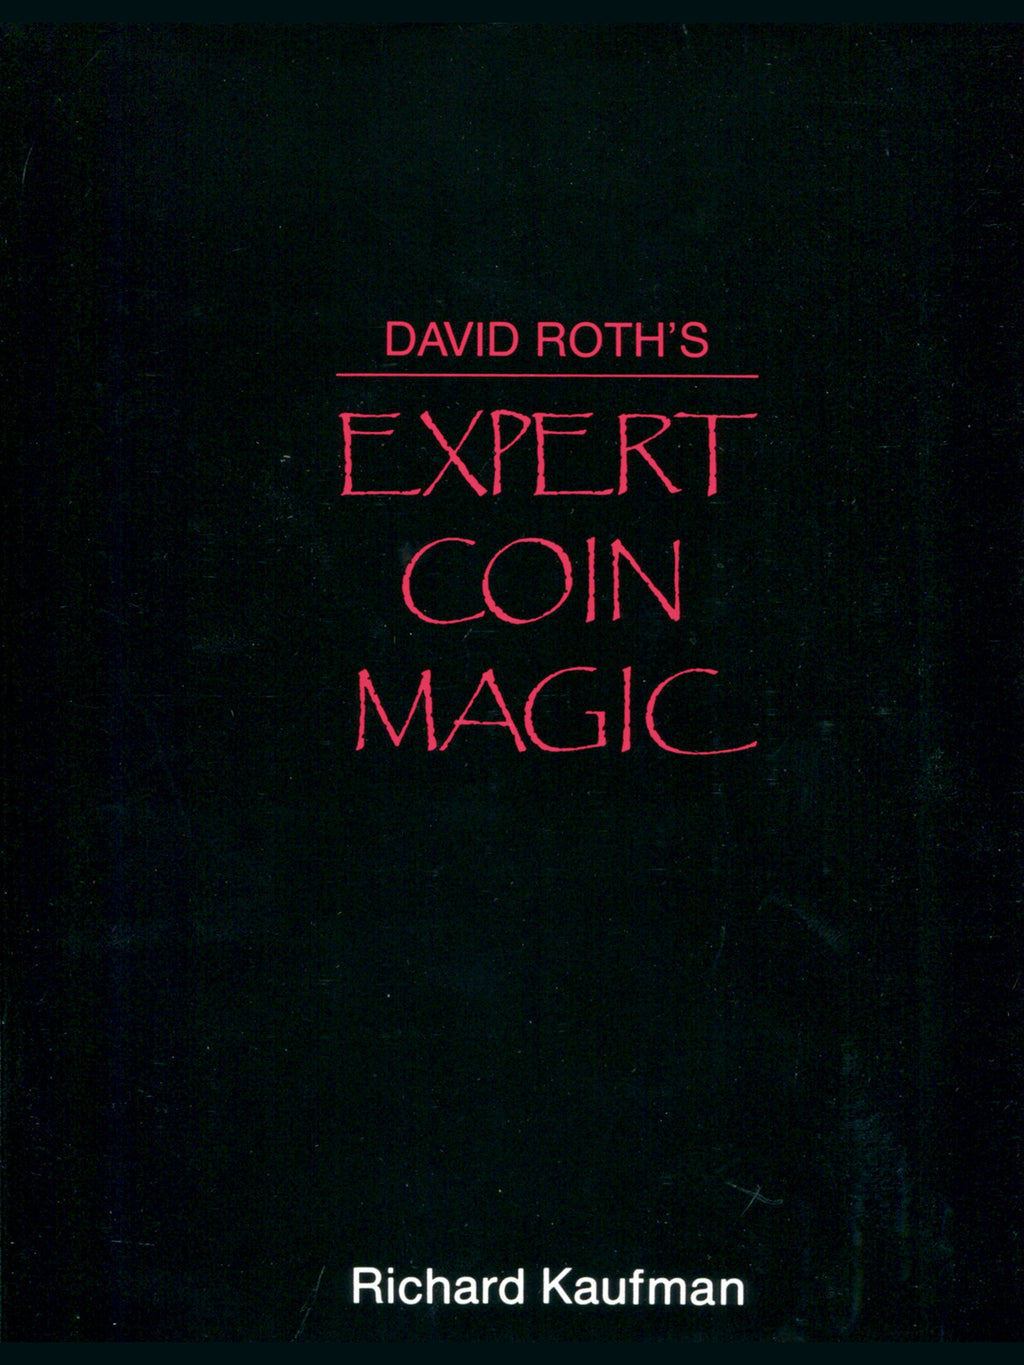 Richard Kaufman - David Roth's Expert Coin Magic